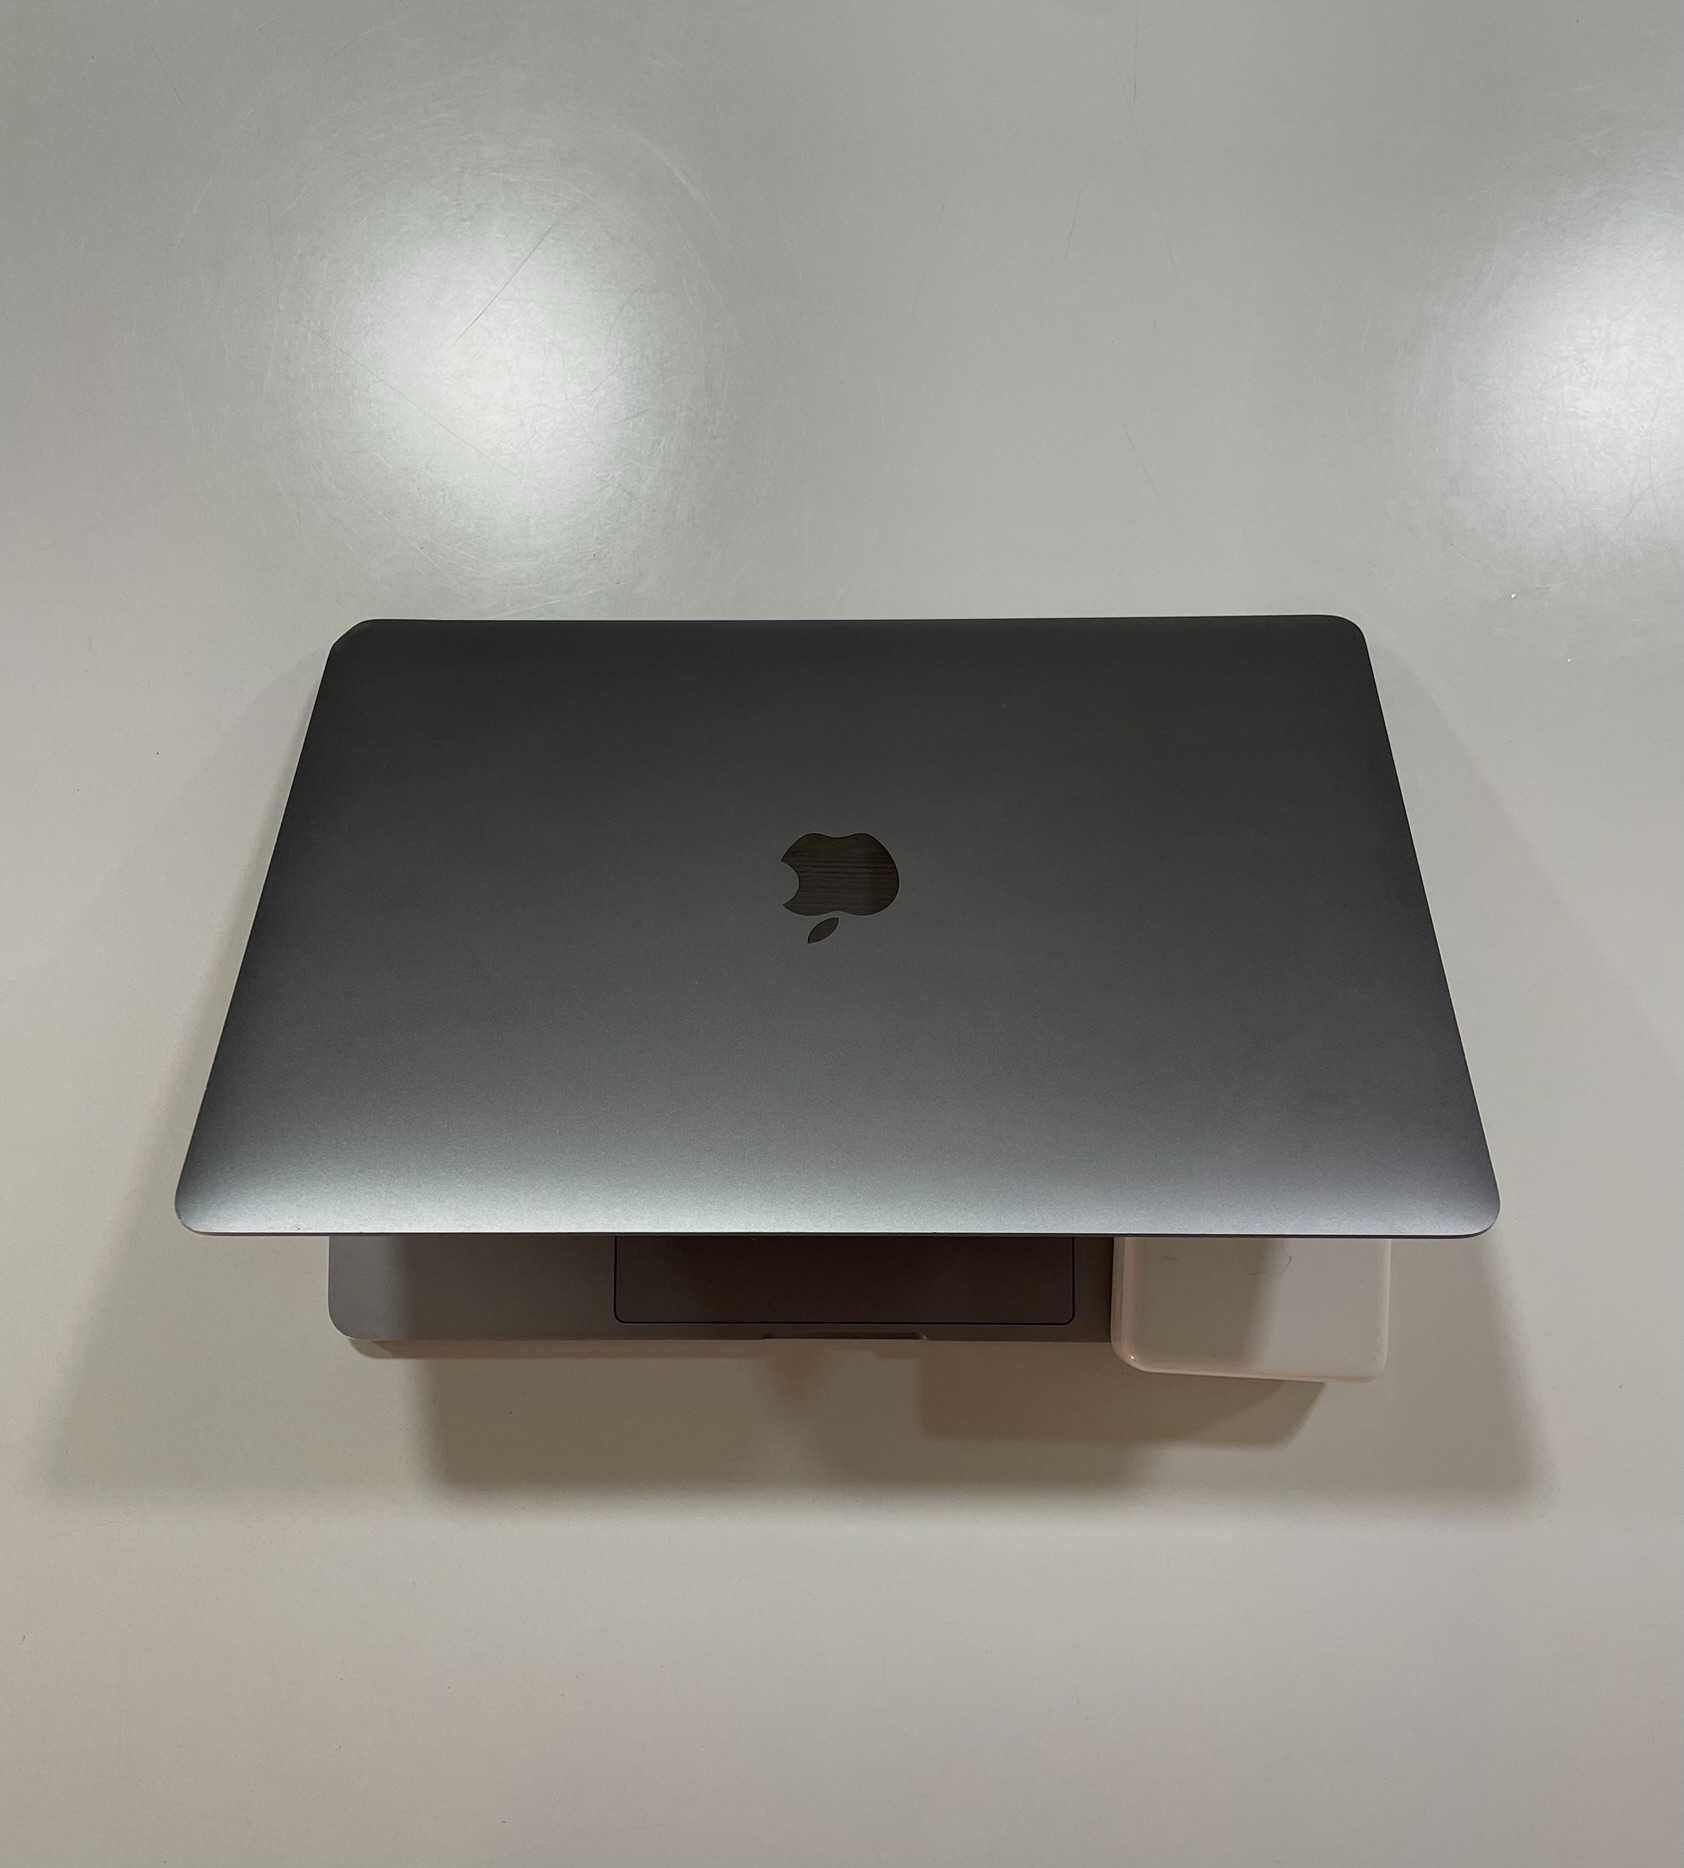 MacBook Pro 13-inch, 2017 (utilizado apenas por estudante